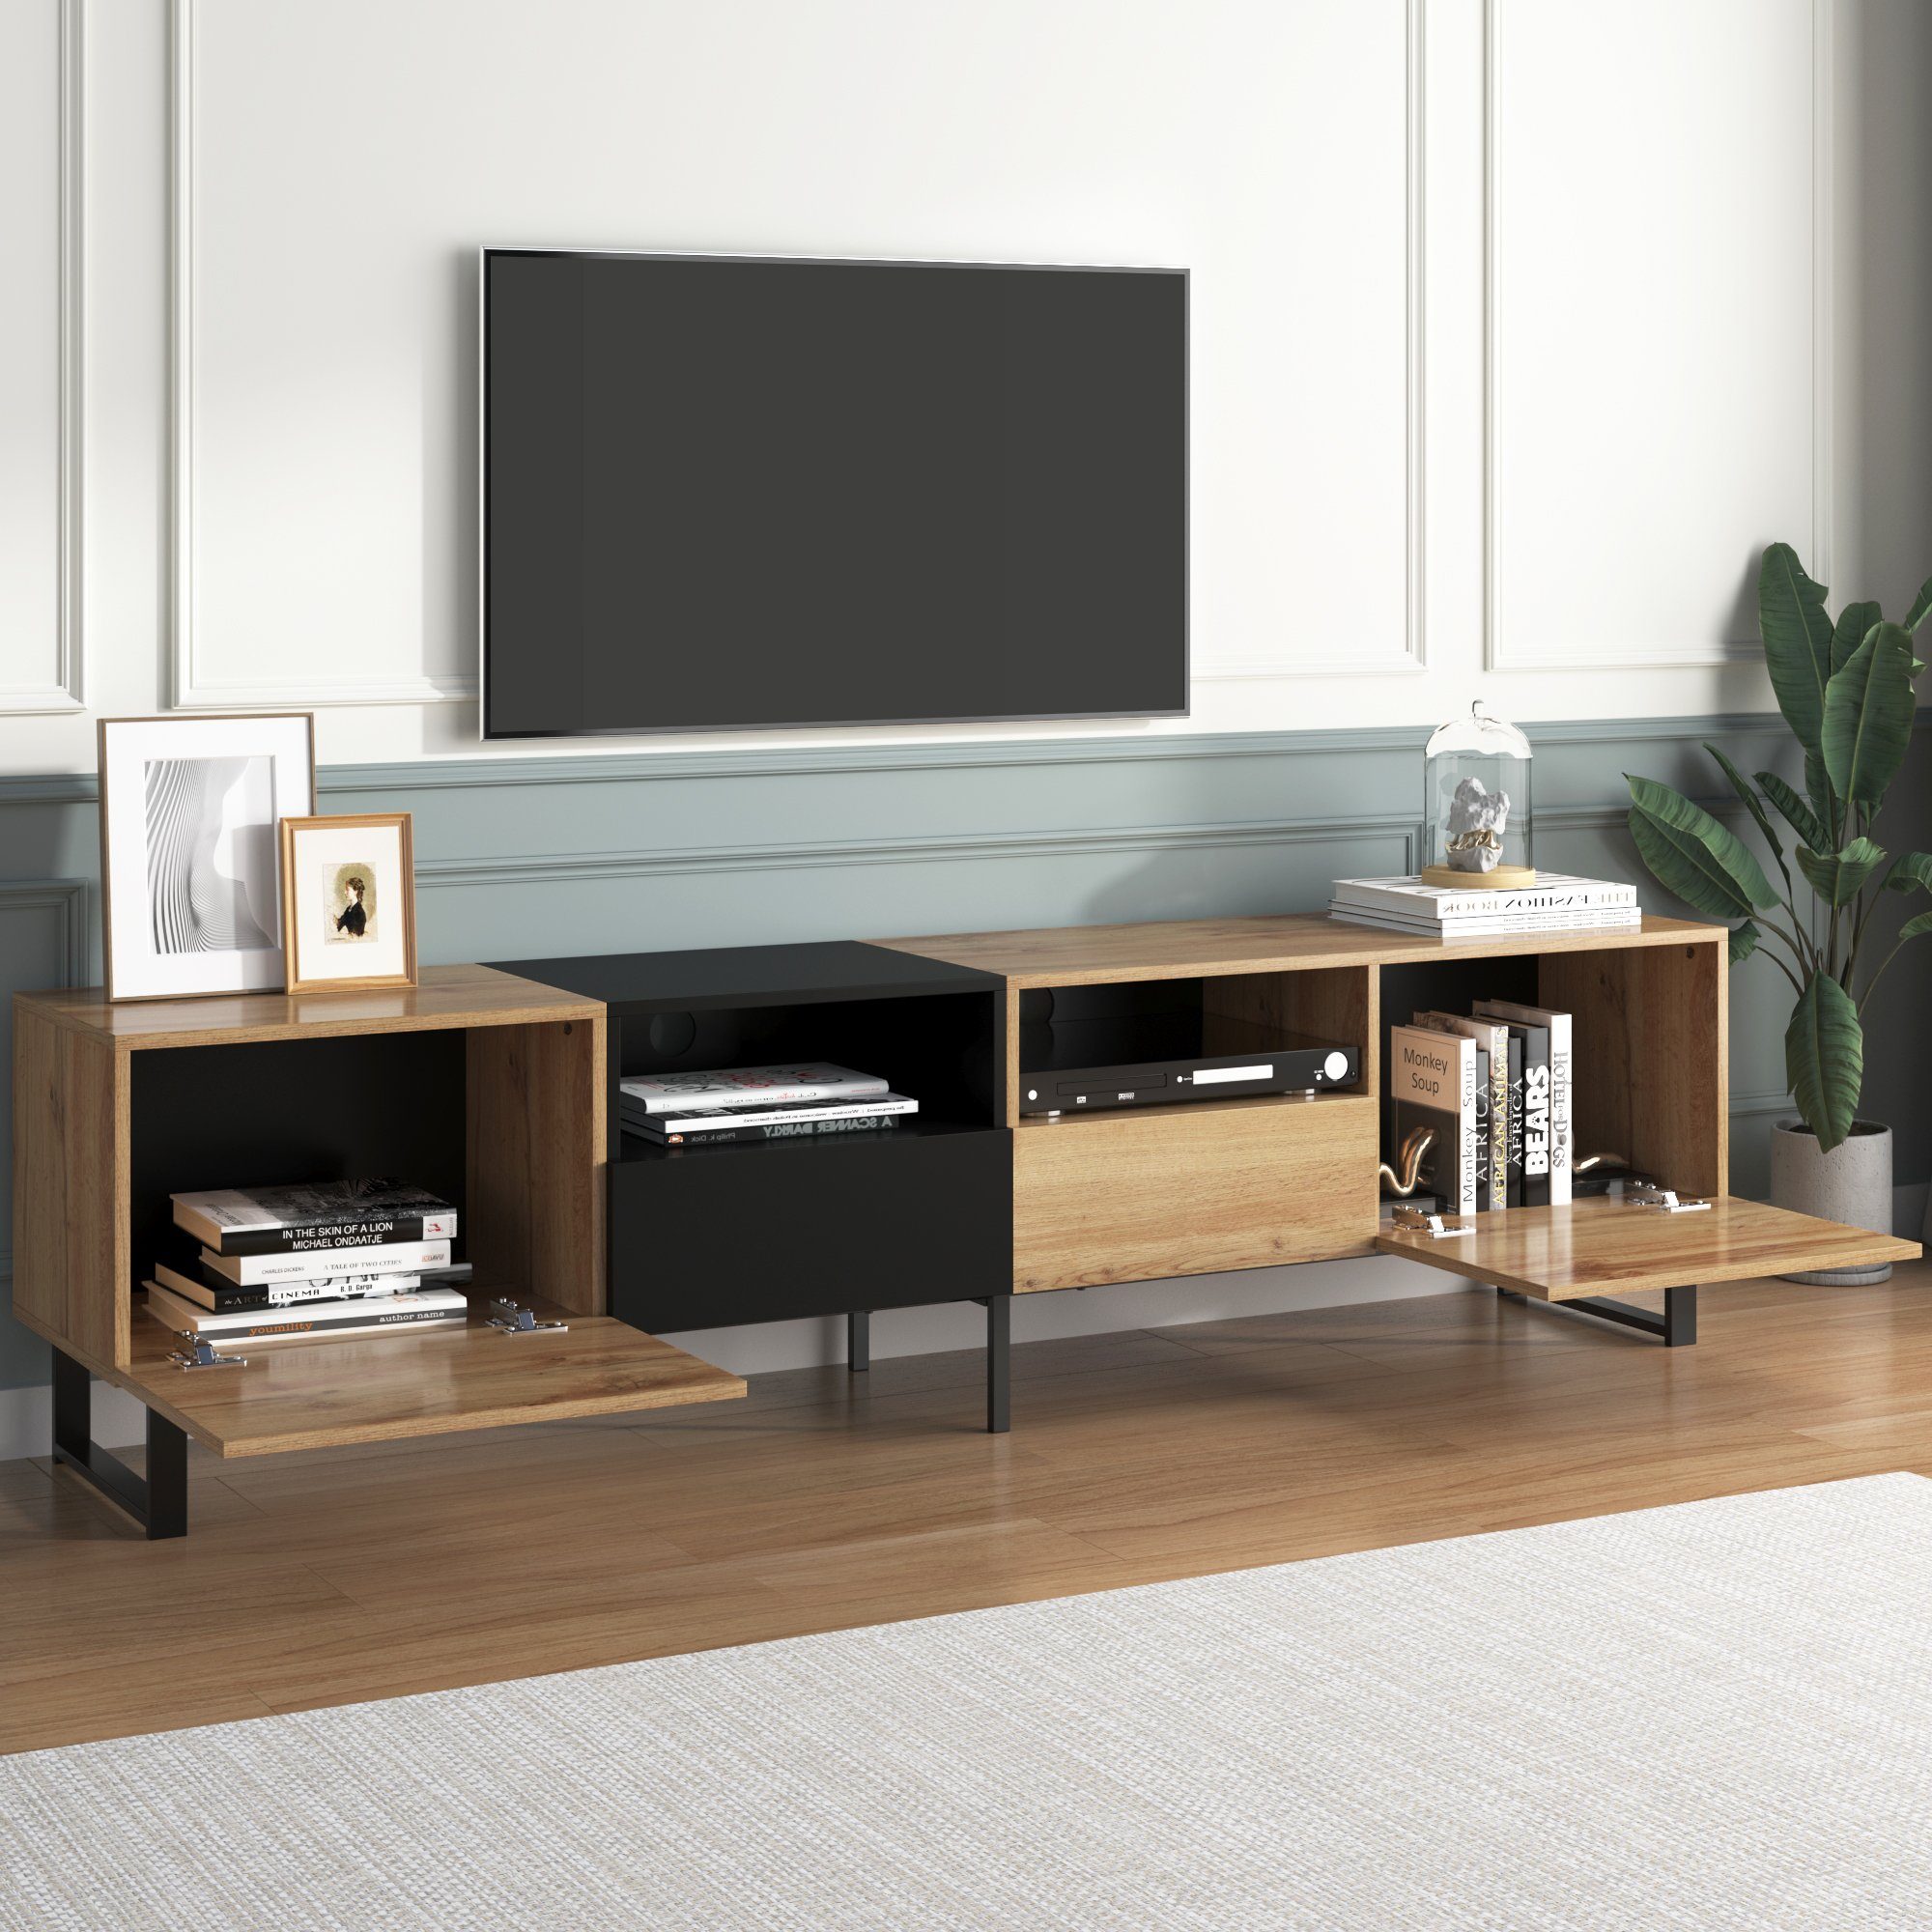 REDOM TV-Schrank TV-Ständer (geräumiger Stauraum, robuste Konstruktion) mit schwarzem und holzfarbenem Design, 190 cm x 38 cm x 48 cm